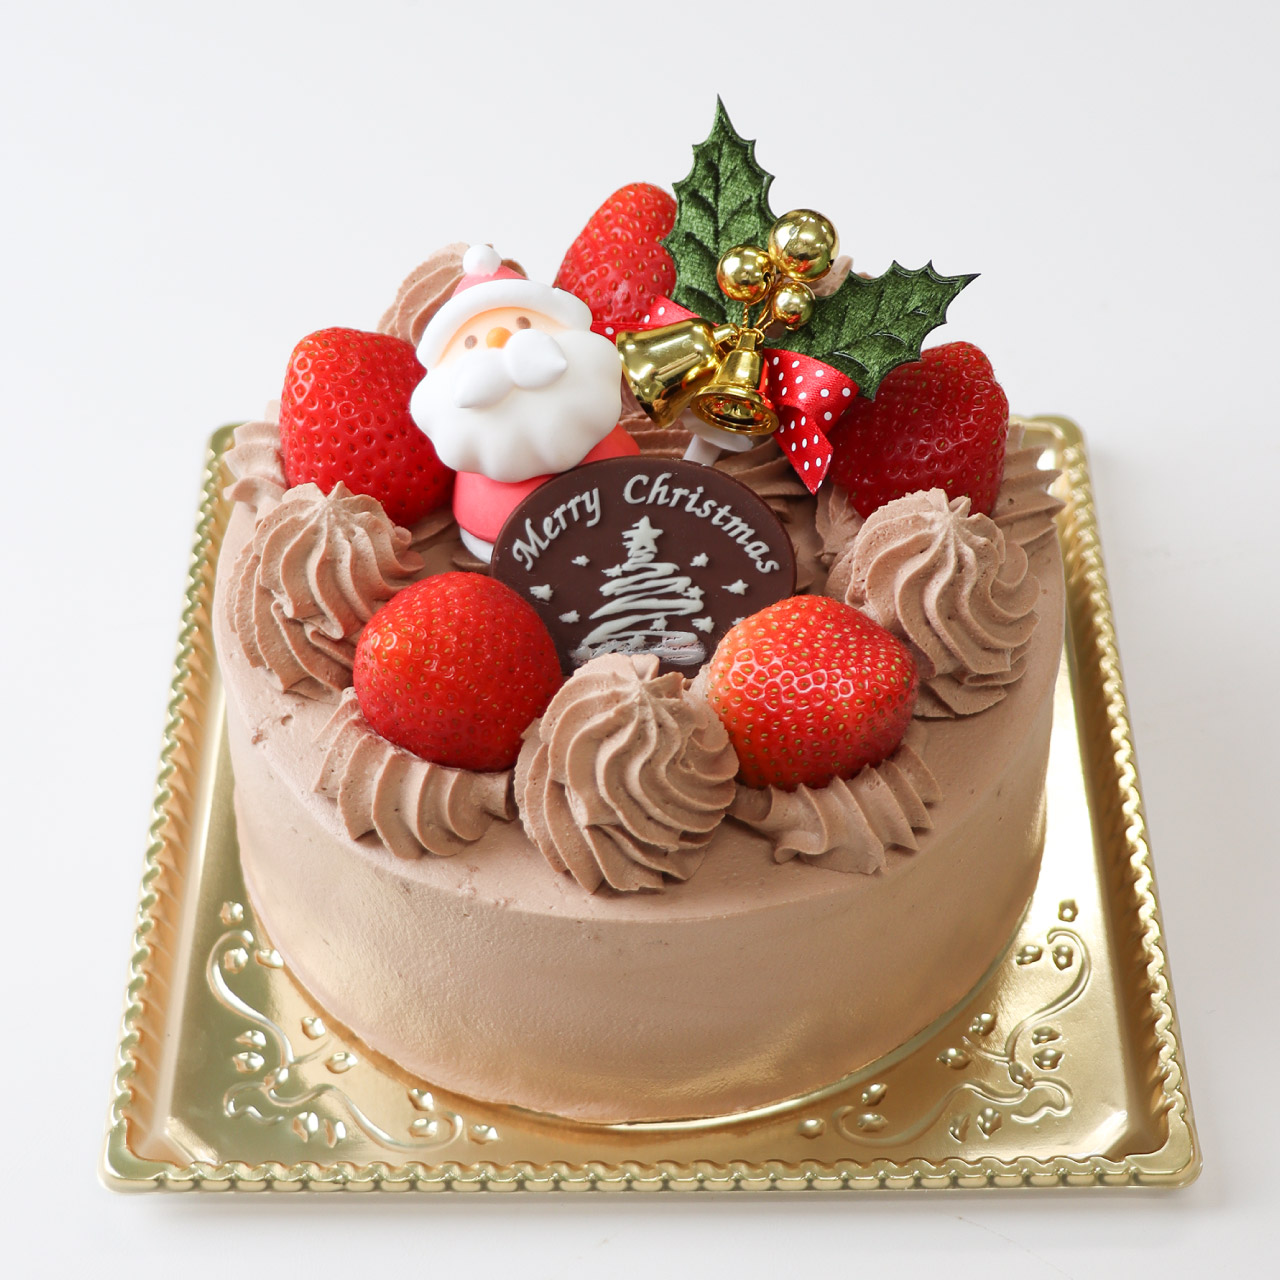 【12/21-25店頭受取】チョコレートクリスマス<15cm>